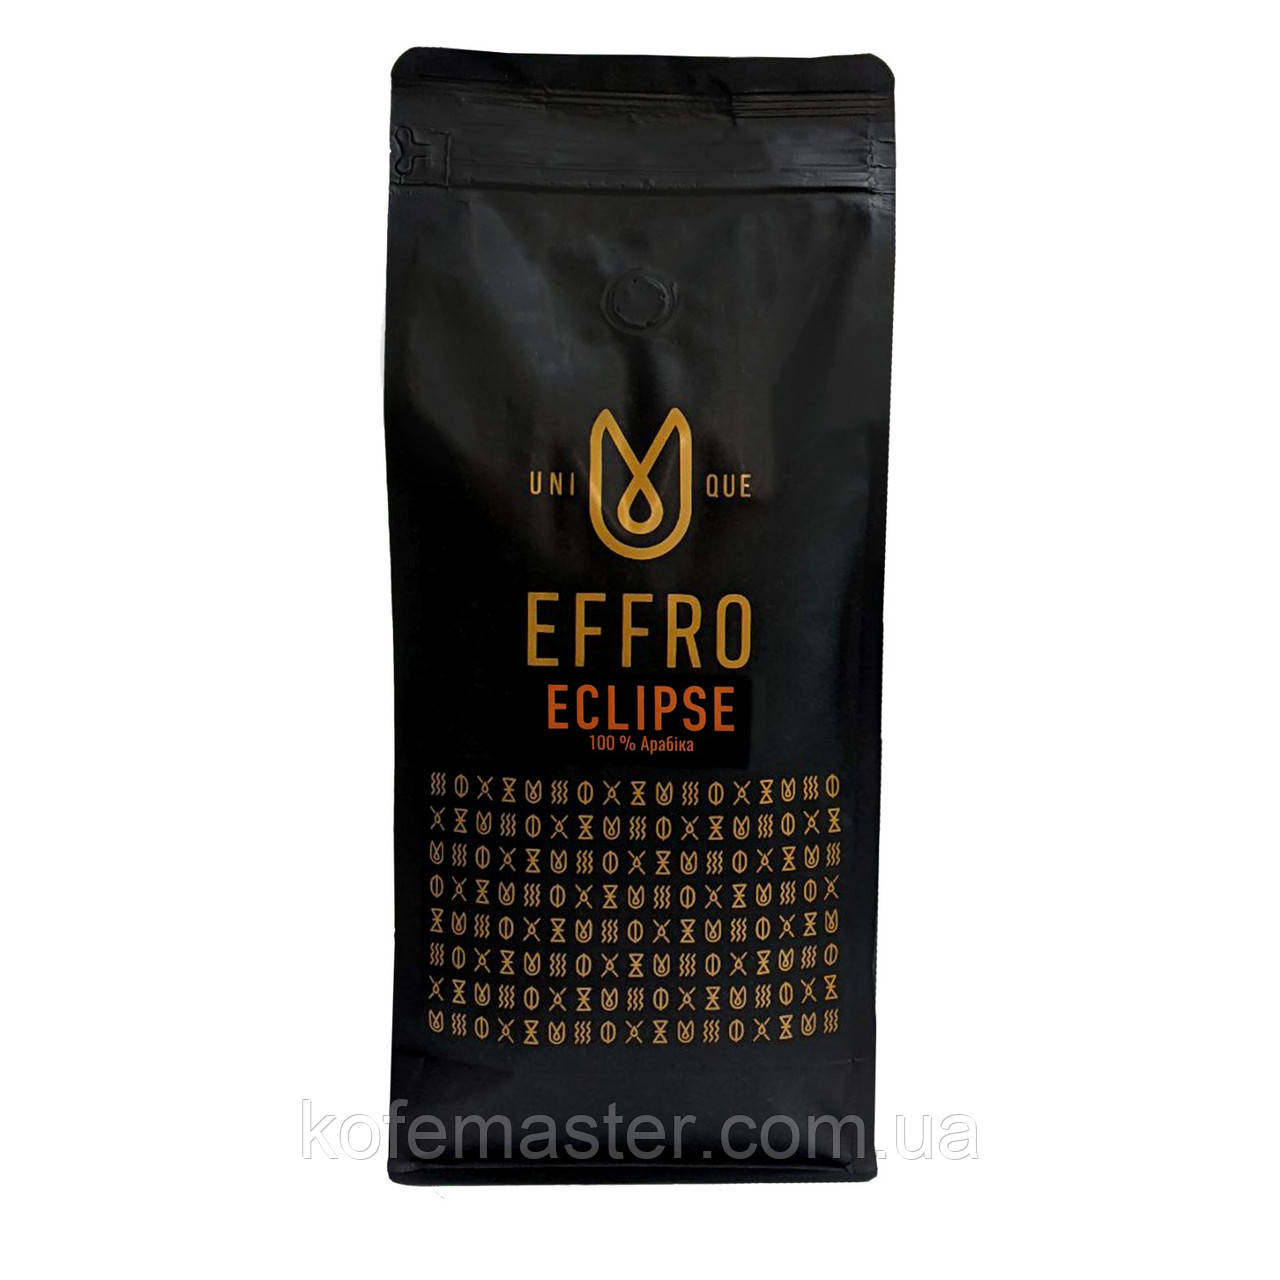 Кава в зернах EFFRO ECLIPSE 1 кг. свіжого обсмажування, 100% арабіка